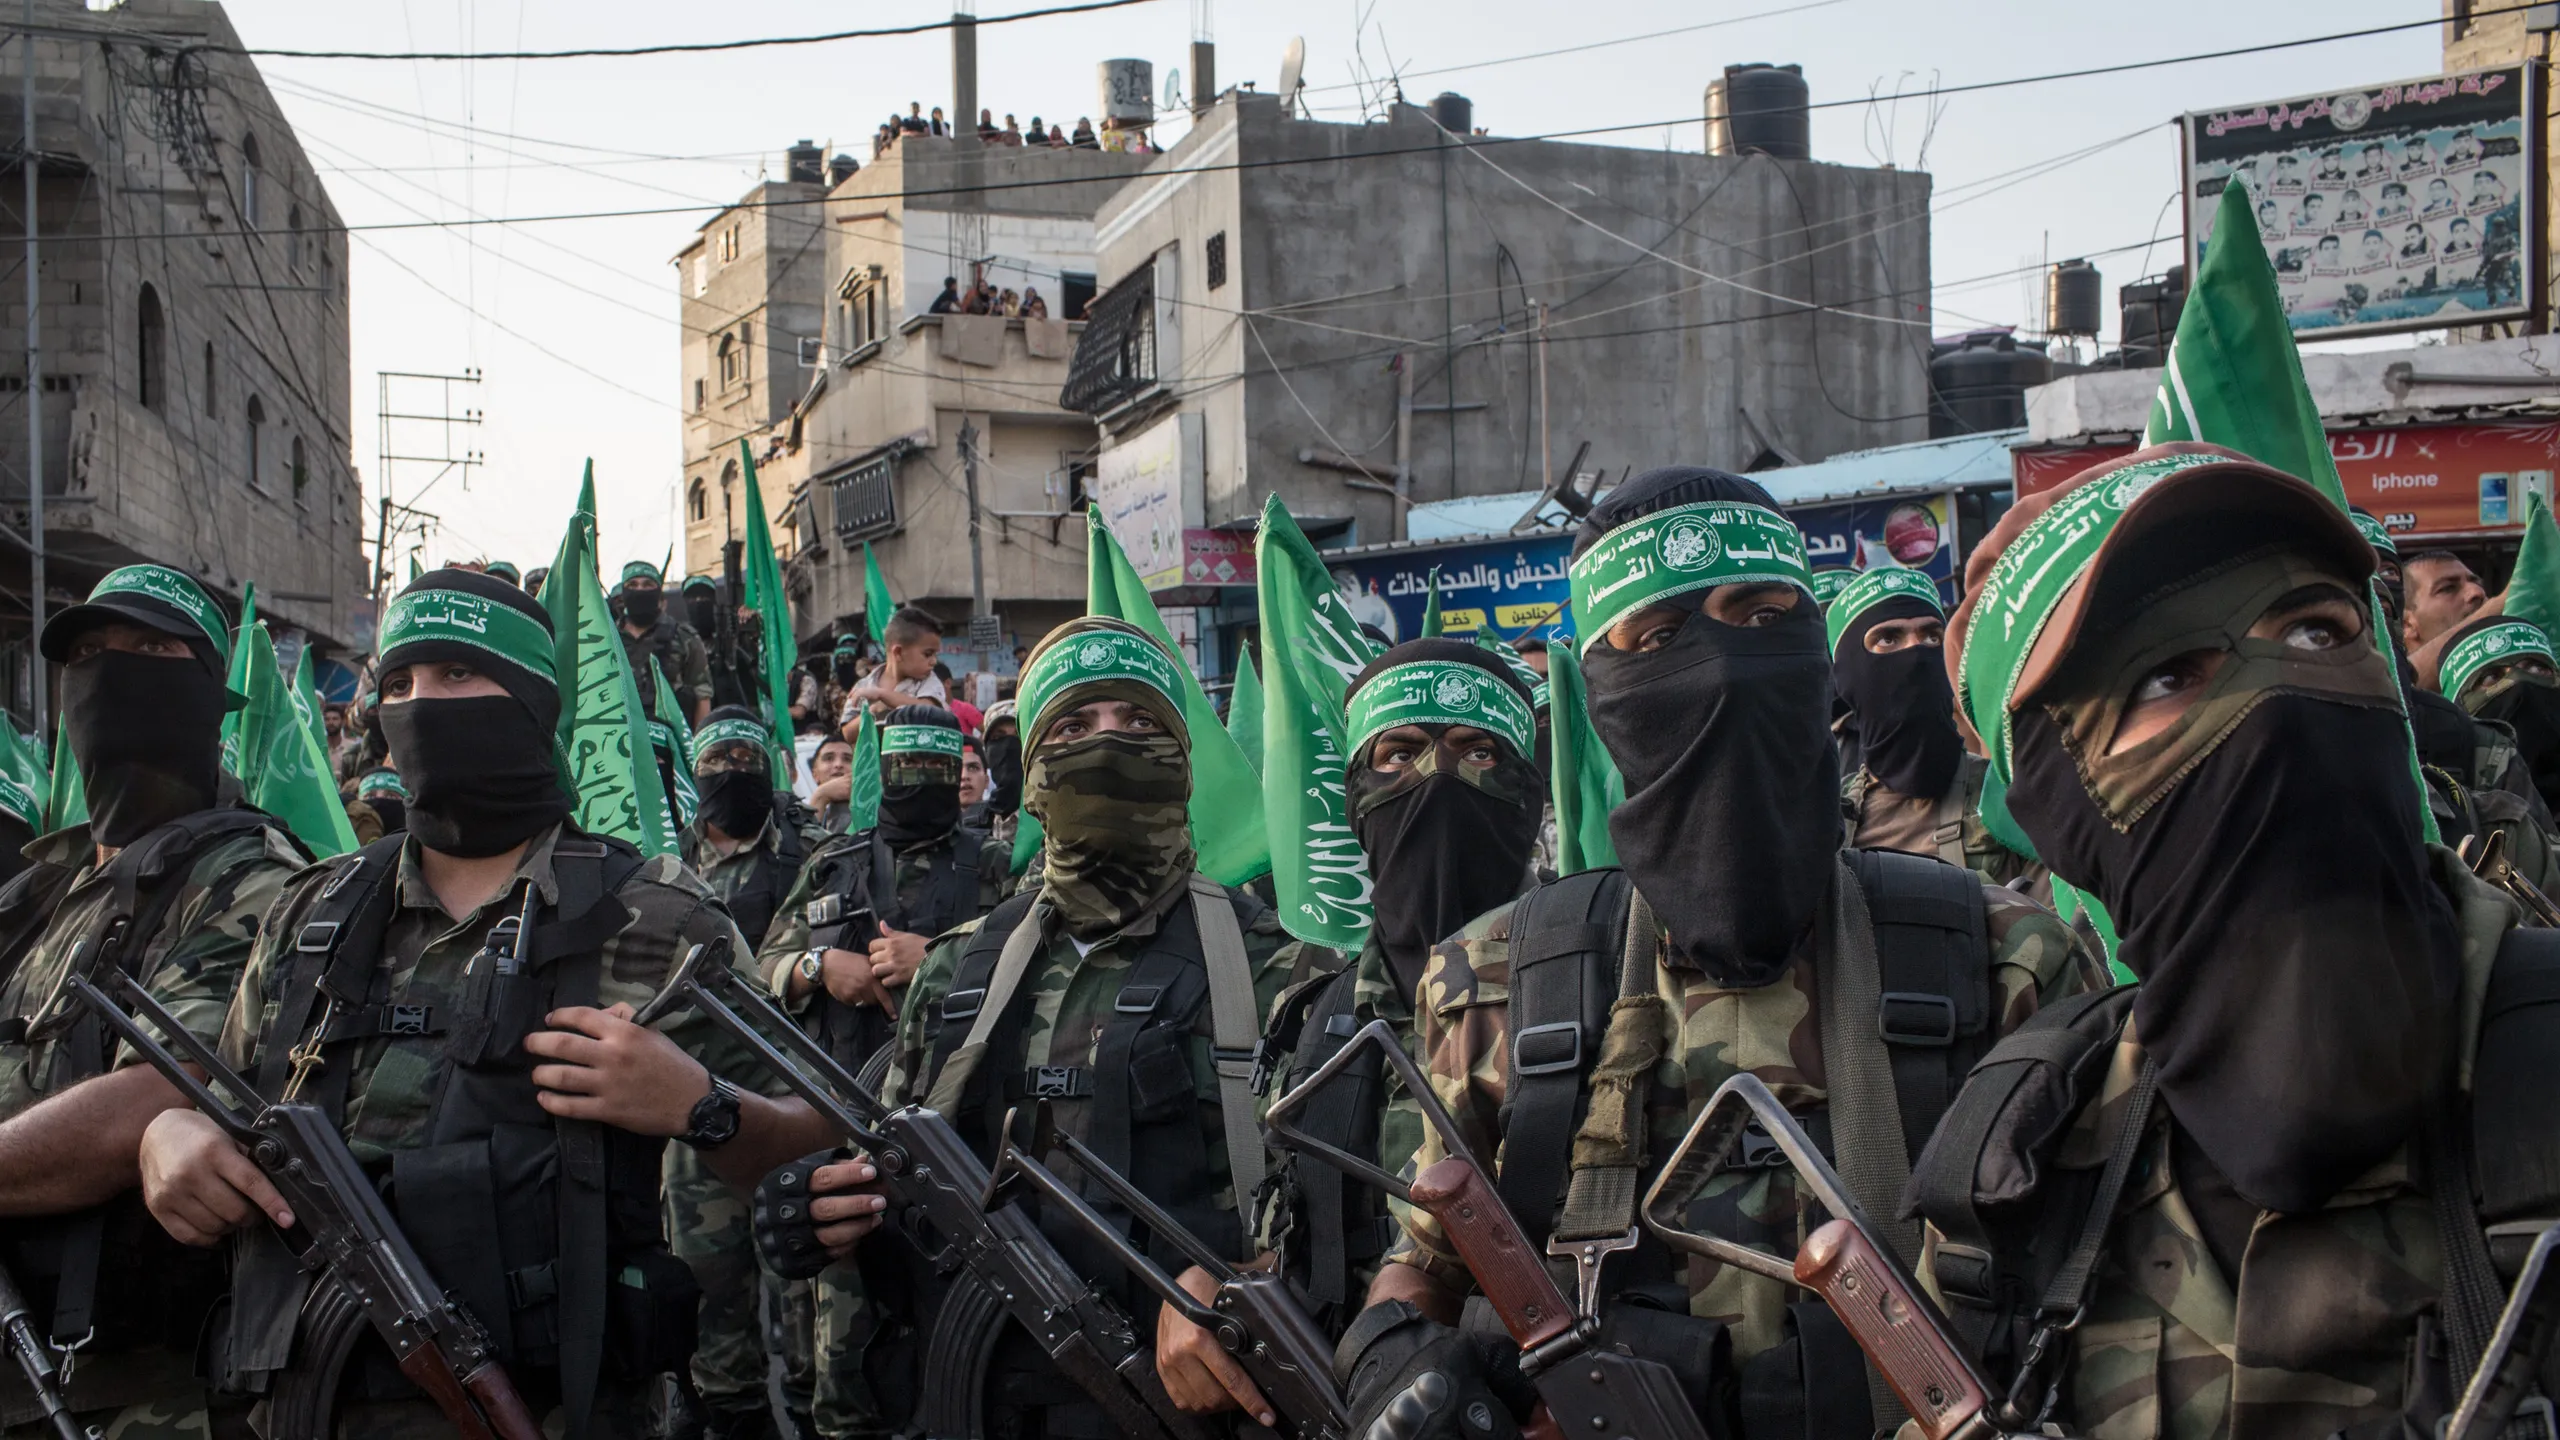 Gli accademici pro Hamas di oggi come quelli pro Hitler di ieri